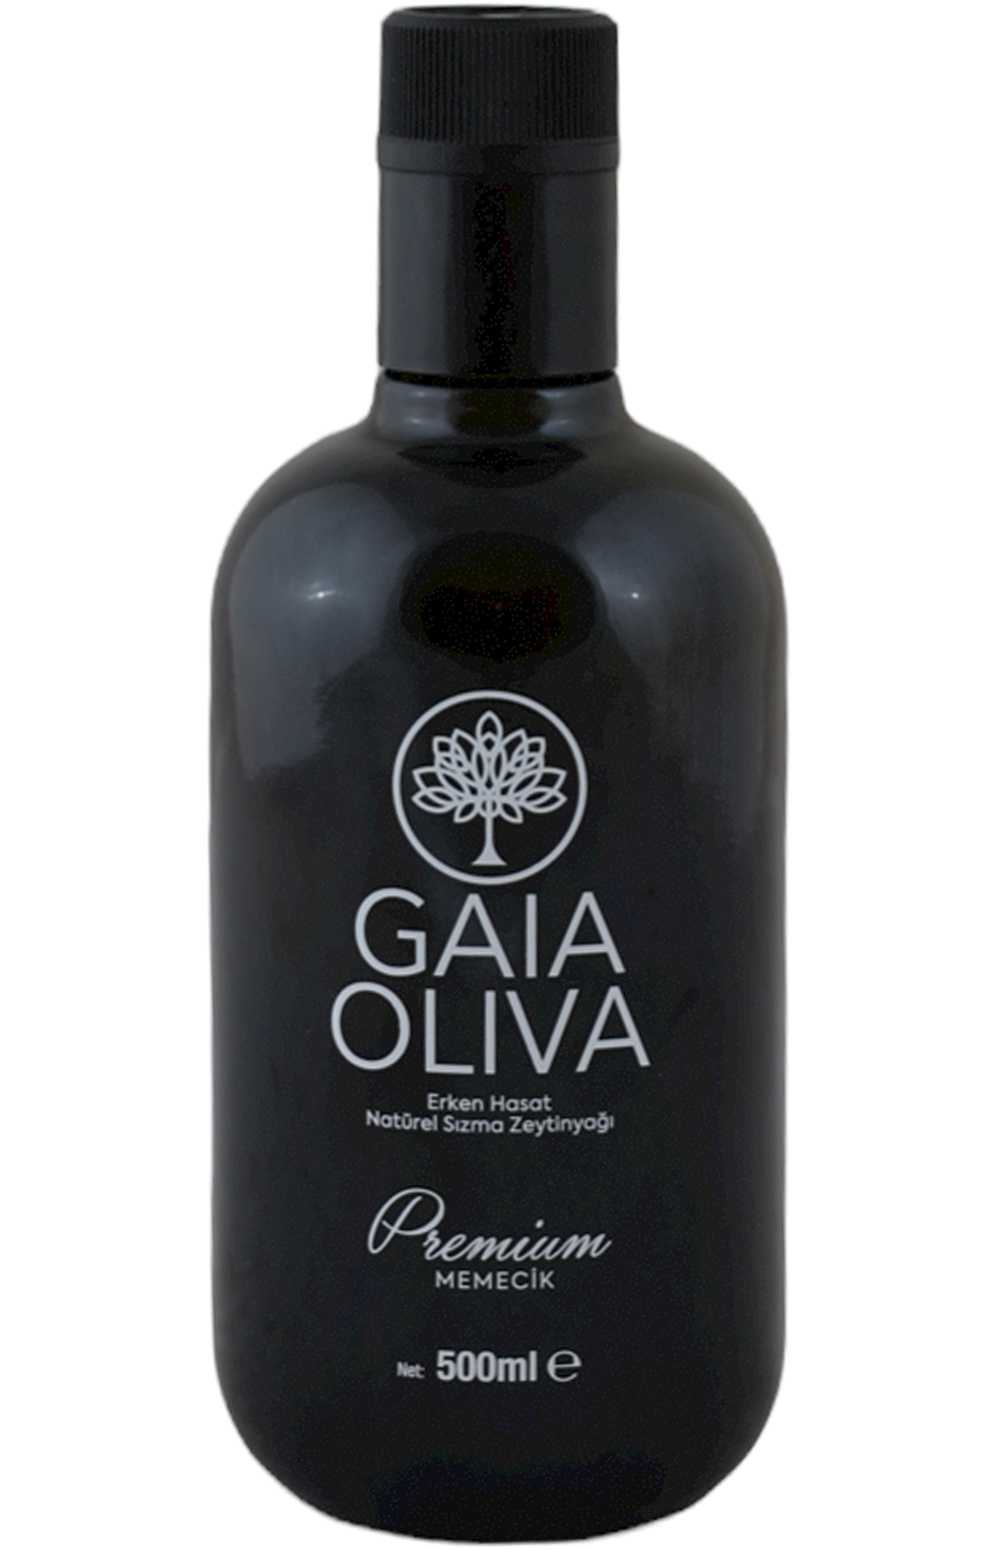 Gaia Oliva Farmers Choice